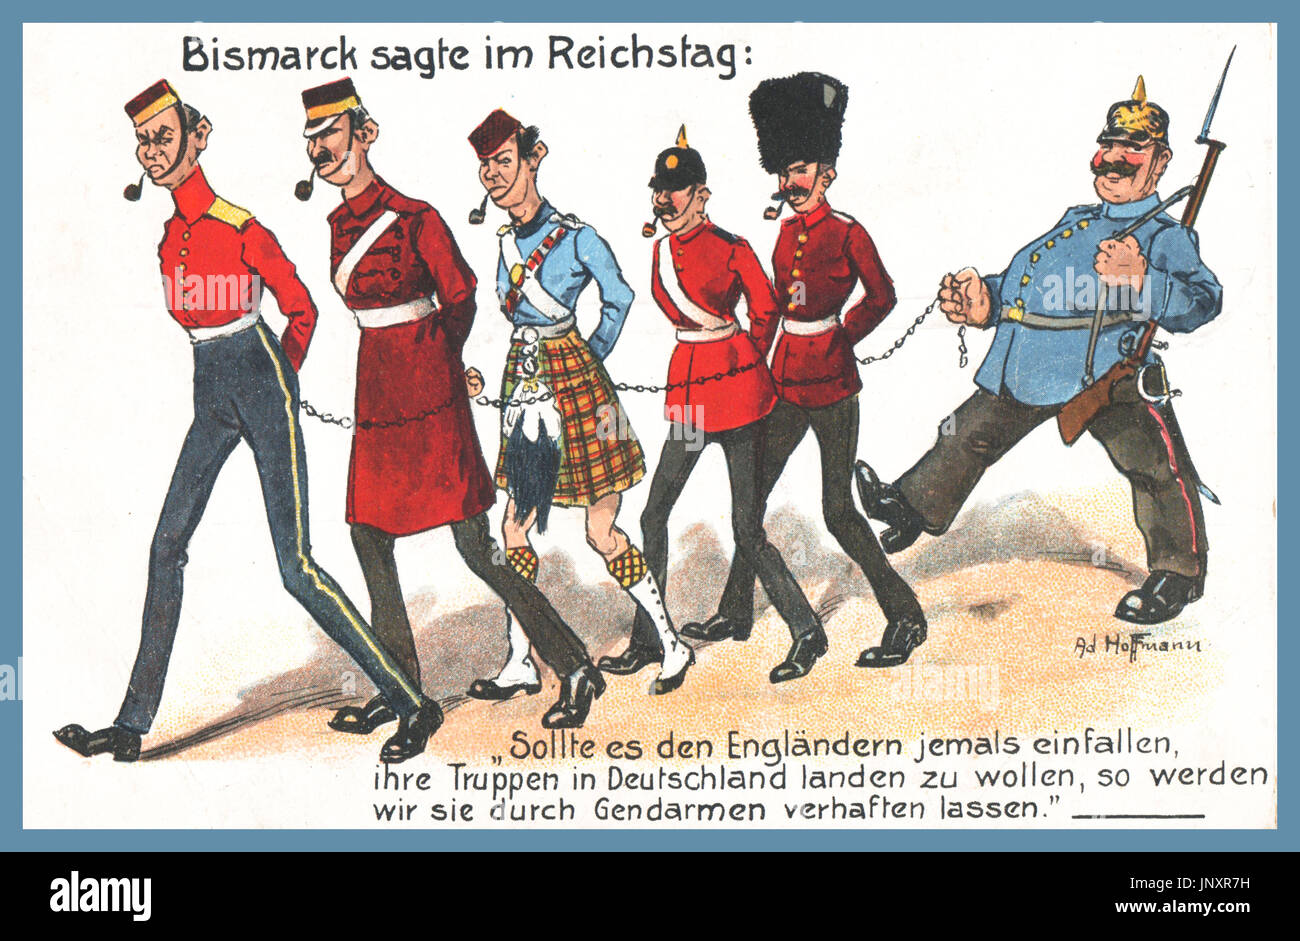 WW1 propaganda tedesca cartolina "Bismarck sagte im Reichstag' 'Bismarck afferma nel Reichstag'...nel poster sono caricature di un tedesco di guardia e cinque soldati britannici incatenati gli uni agli altri per farli sembrare come cani al guinzaglio, un segno di quanto disprezzo i tedeschi li terrà in. I soldati britannici sono gli stereotipi hanno tutti un tubo nella loro bocca e indossa caricatured British uniformi militari. "BISMARK dice nel Reichstag ' ''dovrebbe British mai voglia di sbarcare le loro truppe in Germania, così li hanno arrestato dai gendarmi'' (tedesco WW1 umorismo) Foto Stock